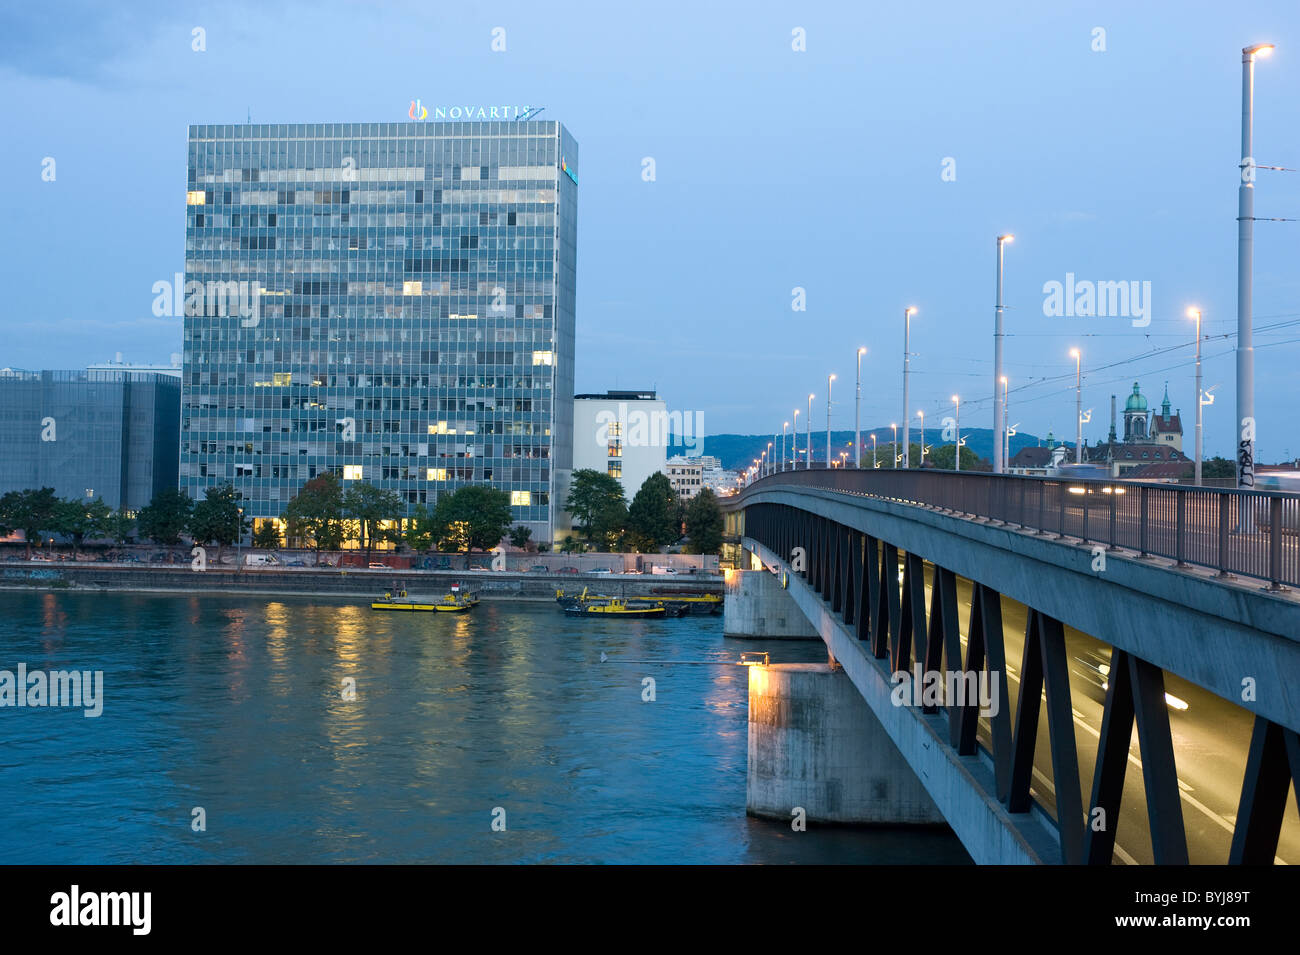 Hauptsitz der Chemie- und Pharma-Unternehmen Novartis AG, Basel, Schweiz Stockfoto